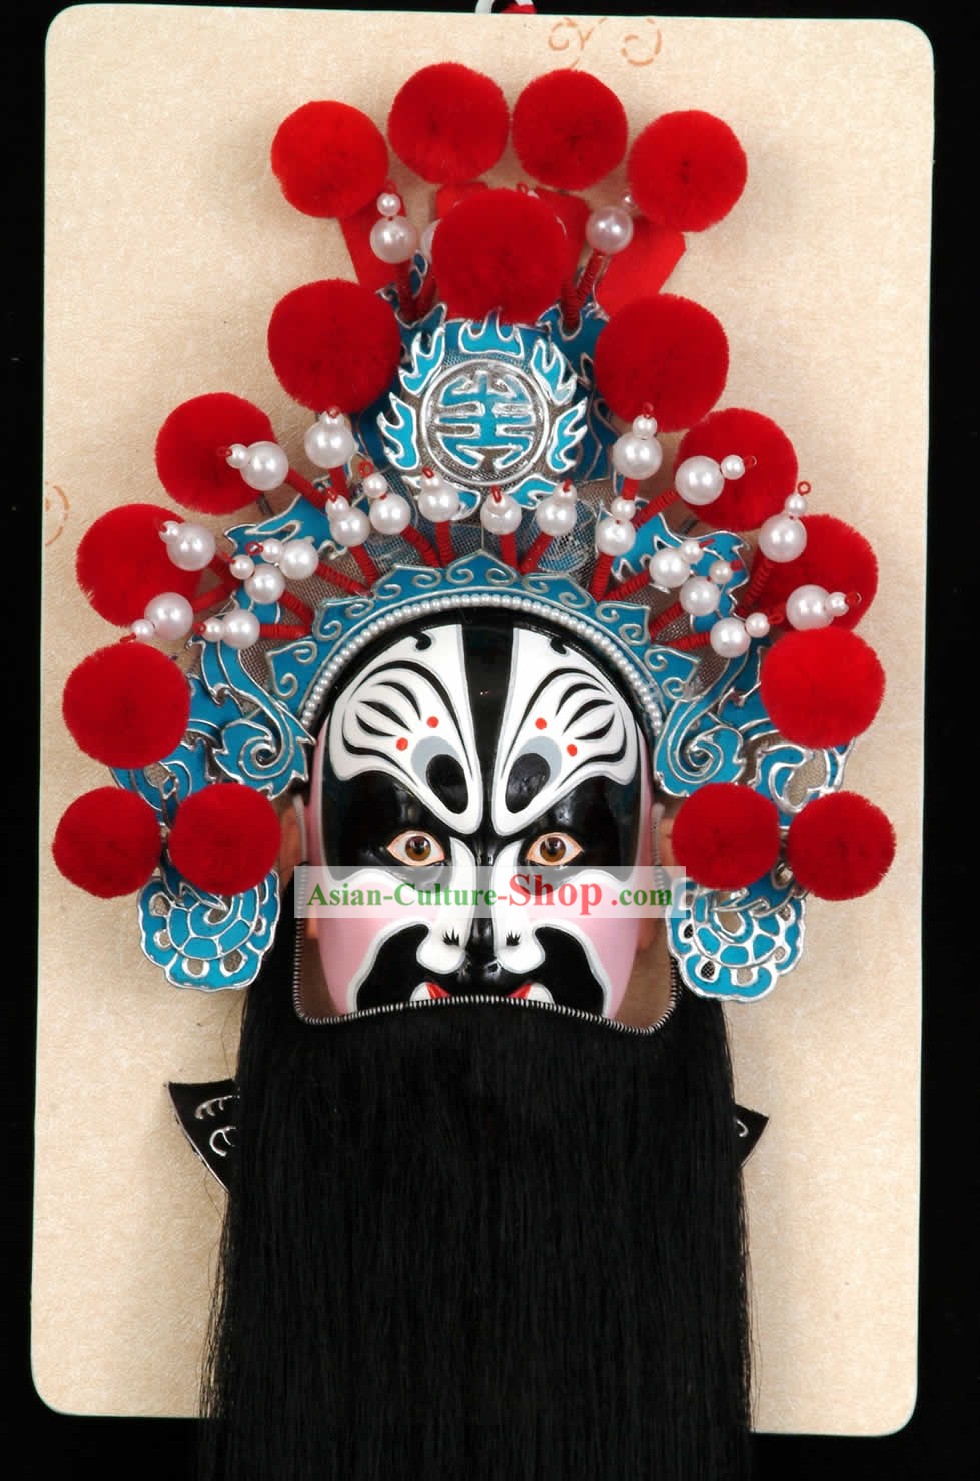 Hechos a mano la Ópera de Pekín Decoración Máscara colgantes - Zhang Fei